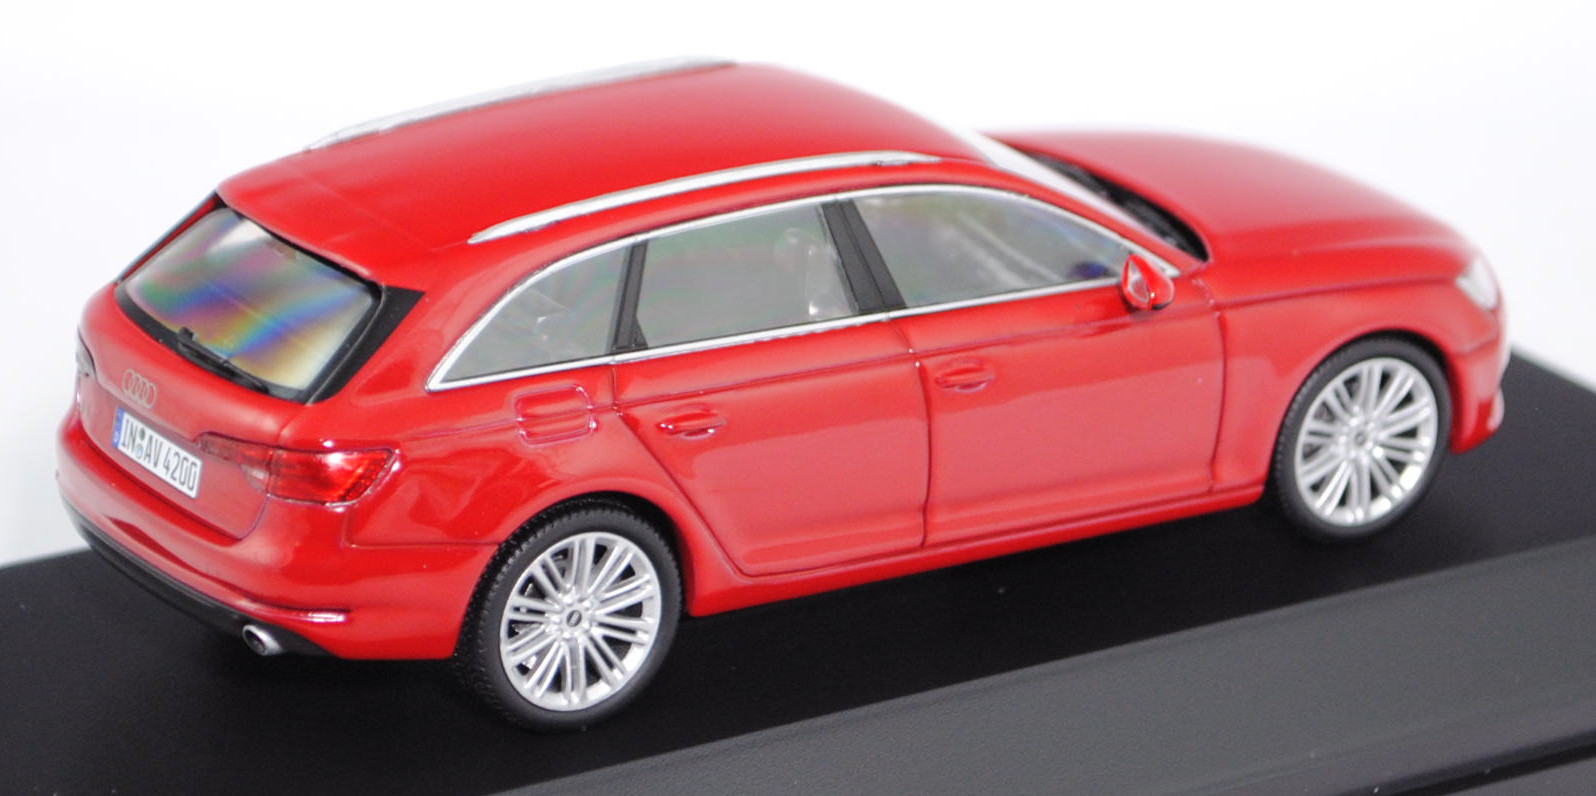 Audi A4 Avant (B9), Modell 2015-, mondscheinblau, Herpa, 1:87,  Werbeschachtel